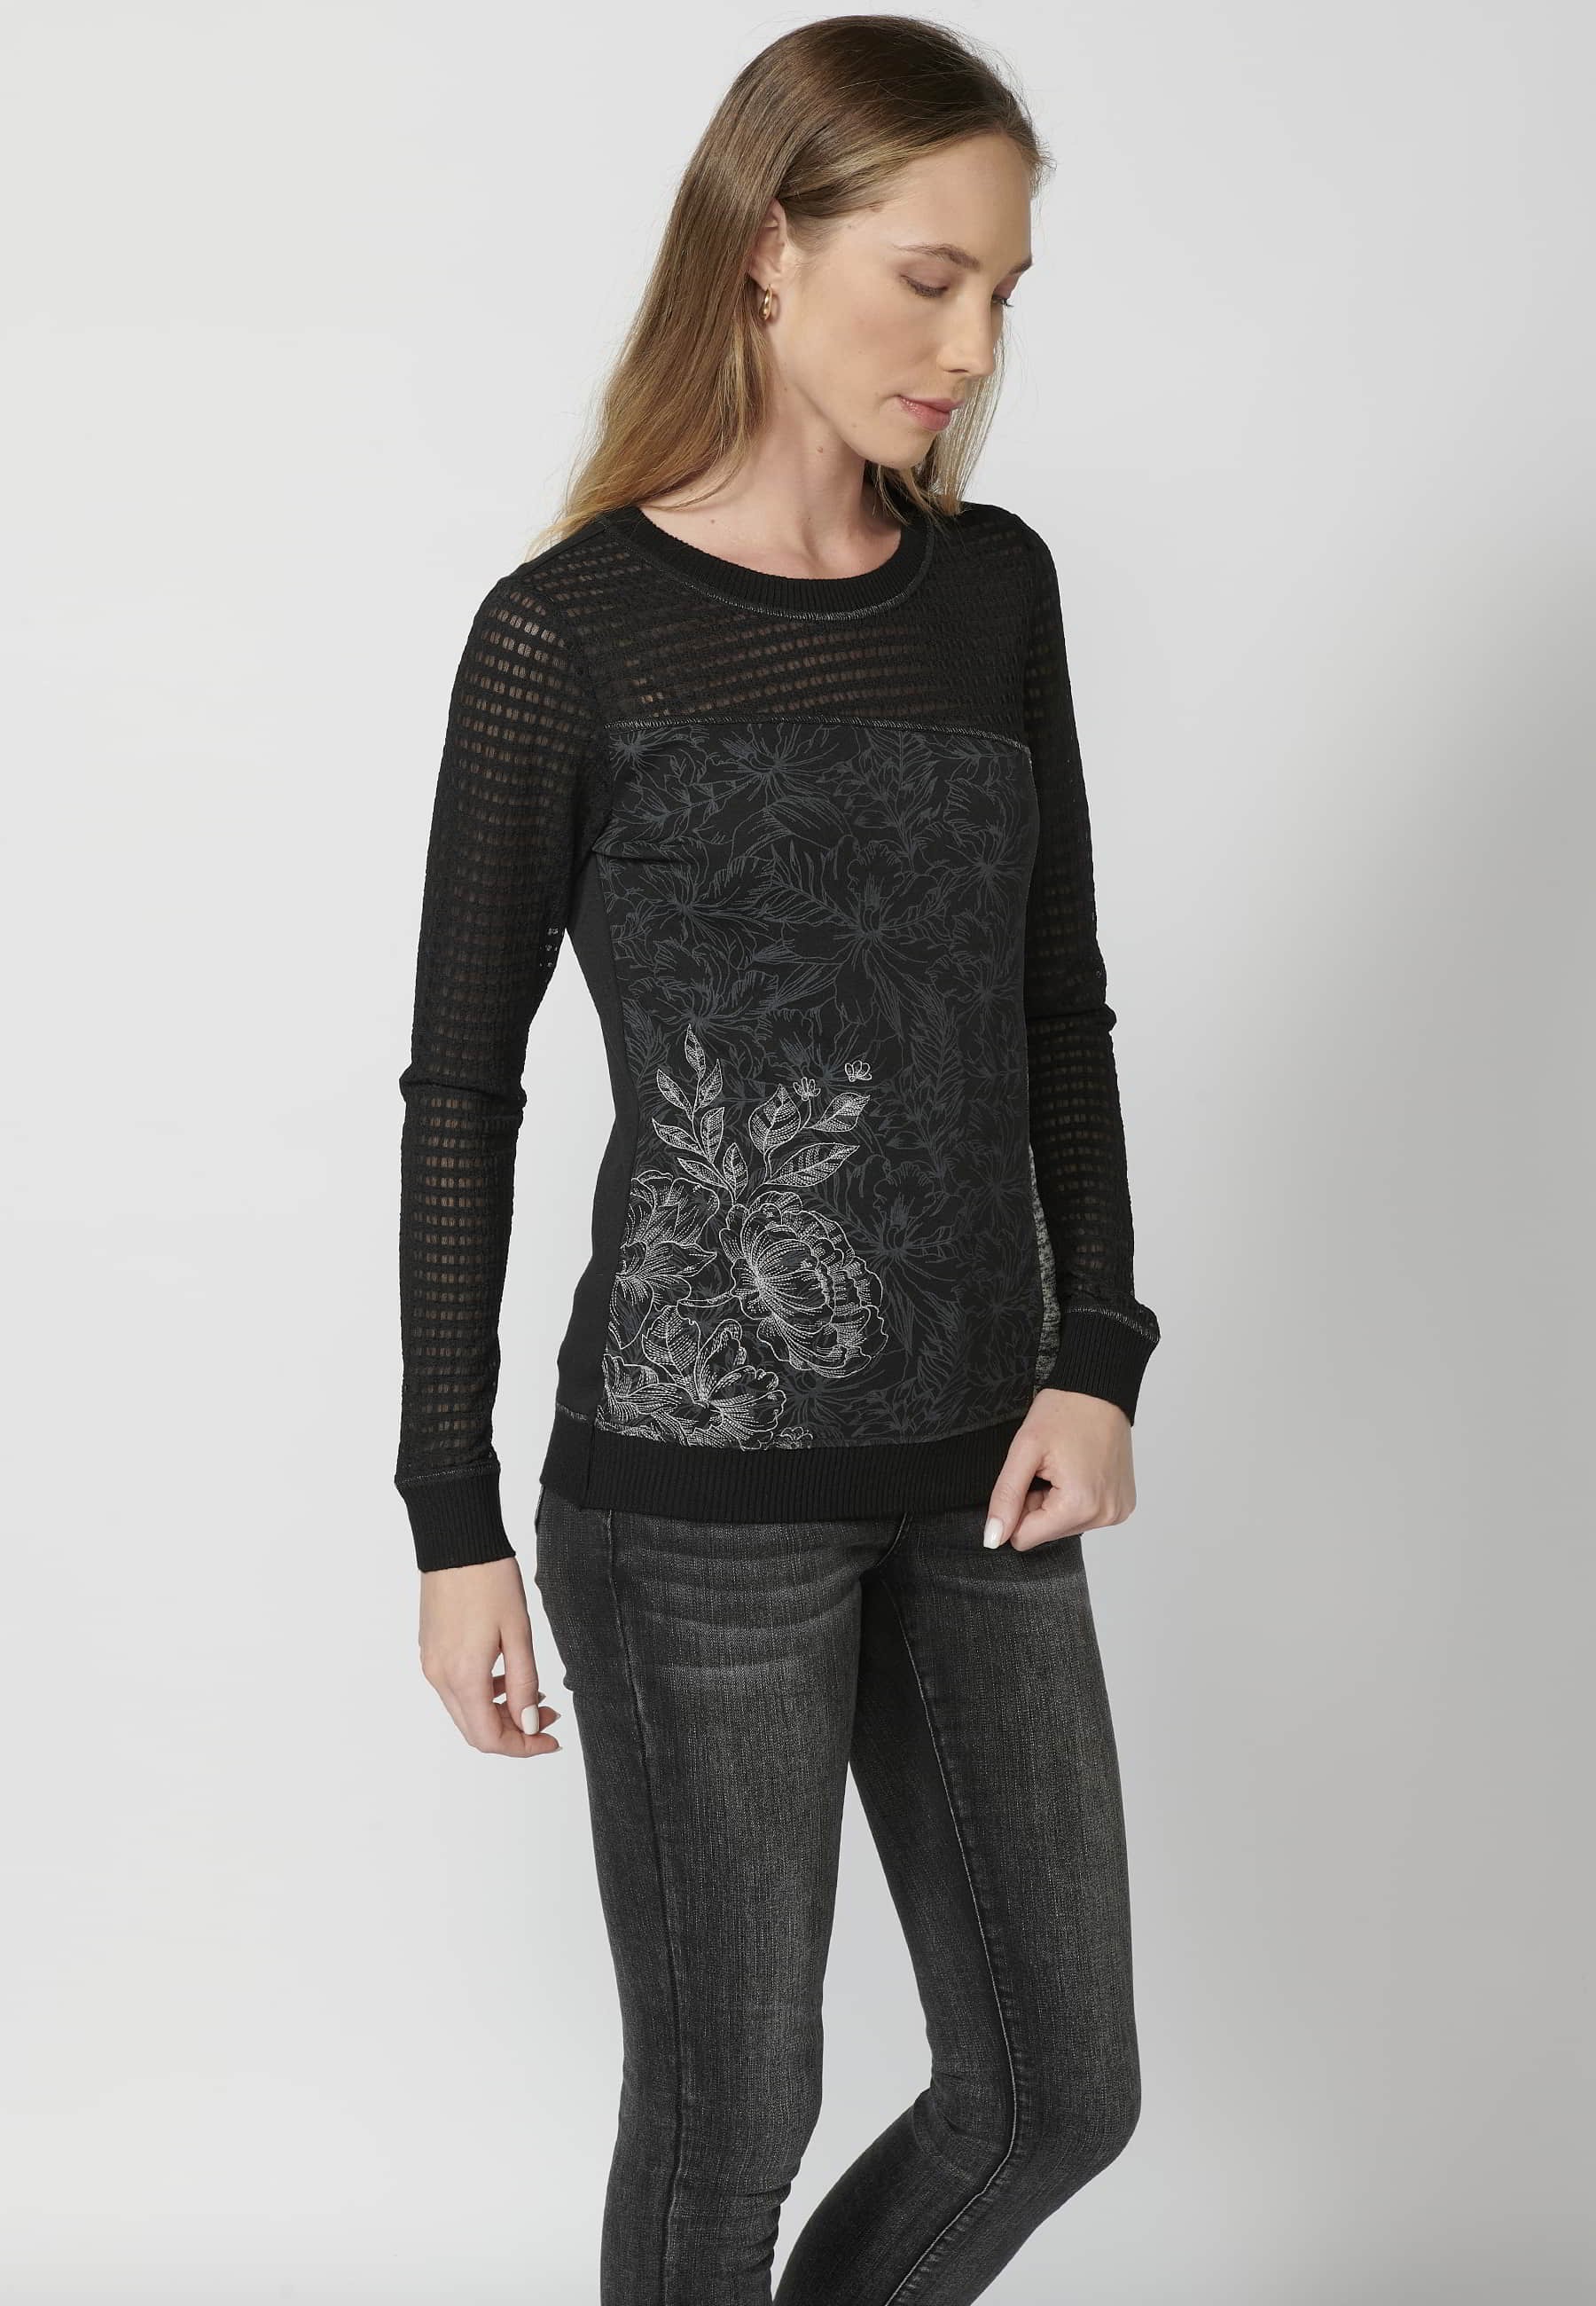 Schwarzes, mit Blumen besticktes, langärmliges Baumwoll-T-Shirt für Damen